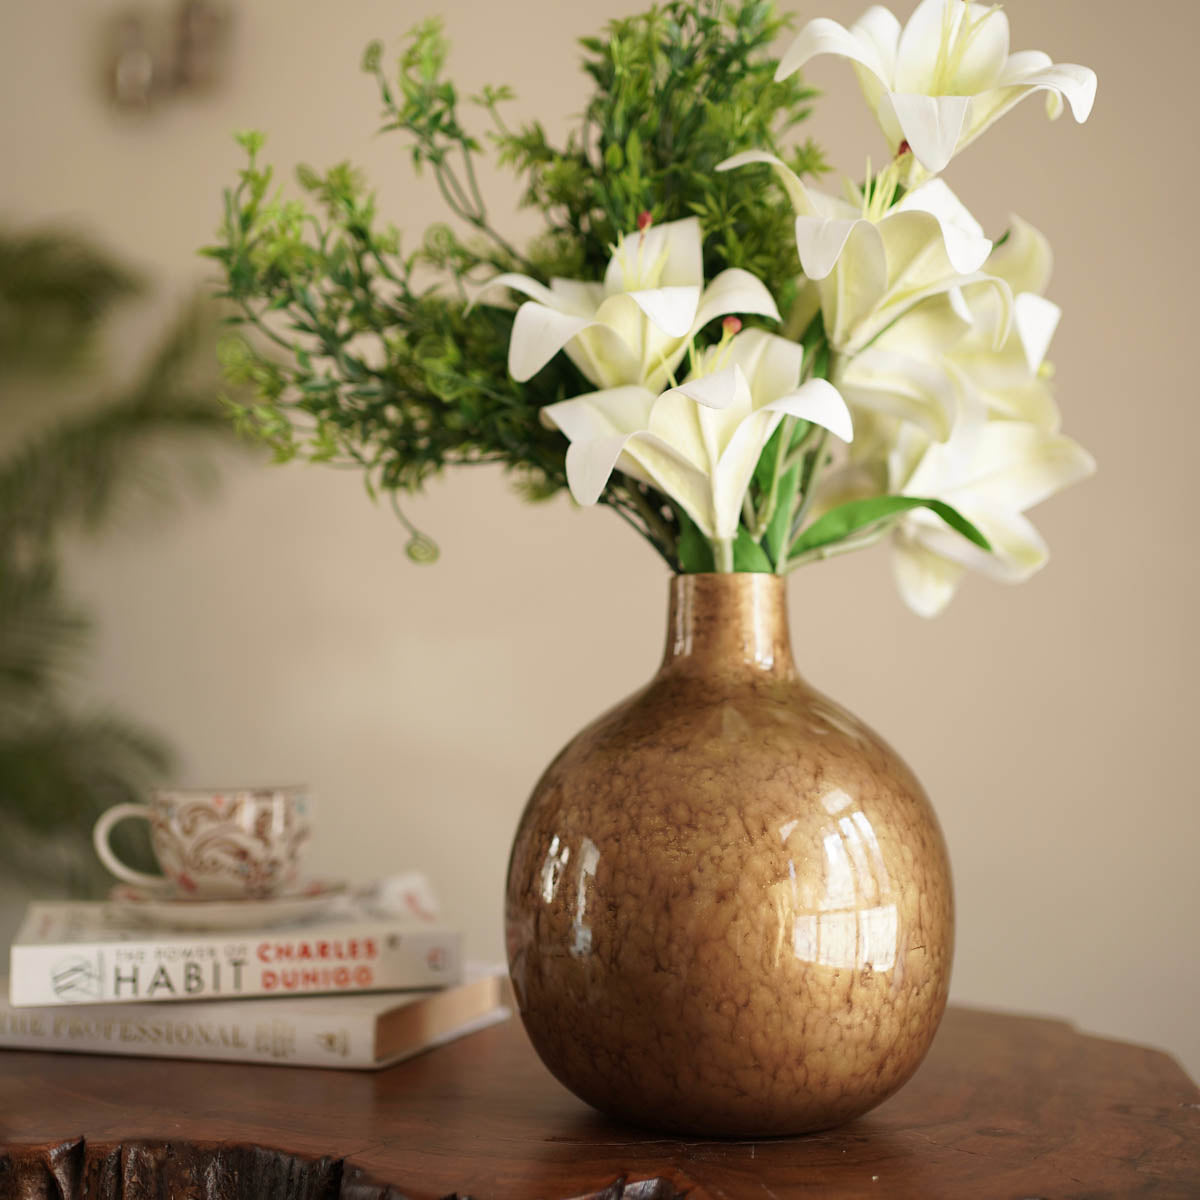 Gold metal Flower vase - Large 